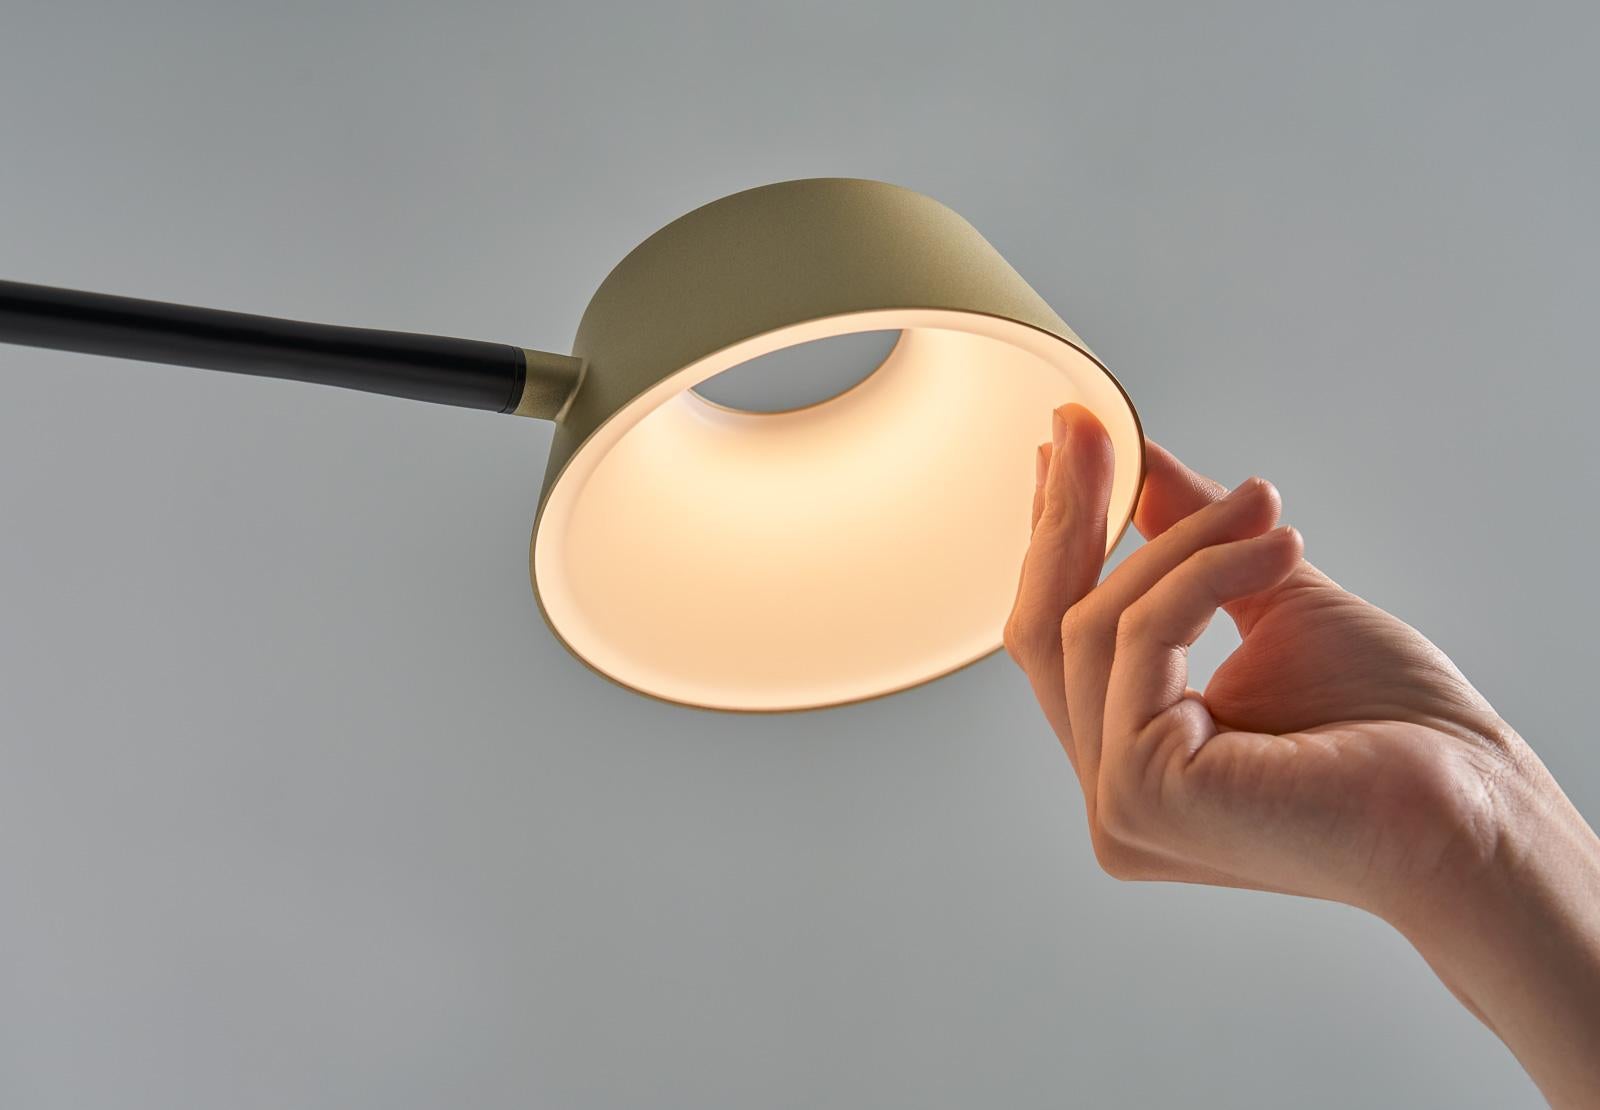 Les lampes de table et les lampadaires OLO sont les dernières nouveautés de la famille OLO. L'abat-jour creux rotatif est doté d'un design d'avant-garde et offre un rendu des couleurs de haute qualité CRI 90. Disponible en deux coloris, la lampe de